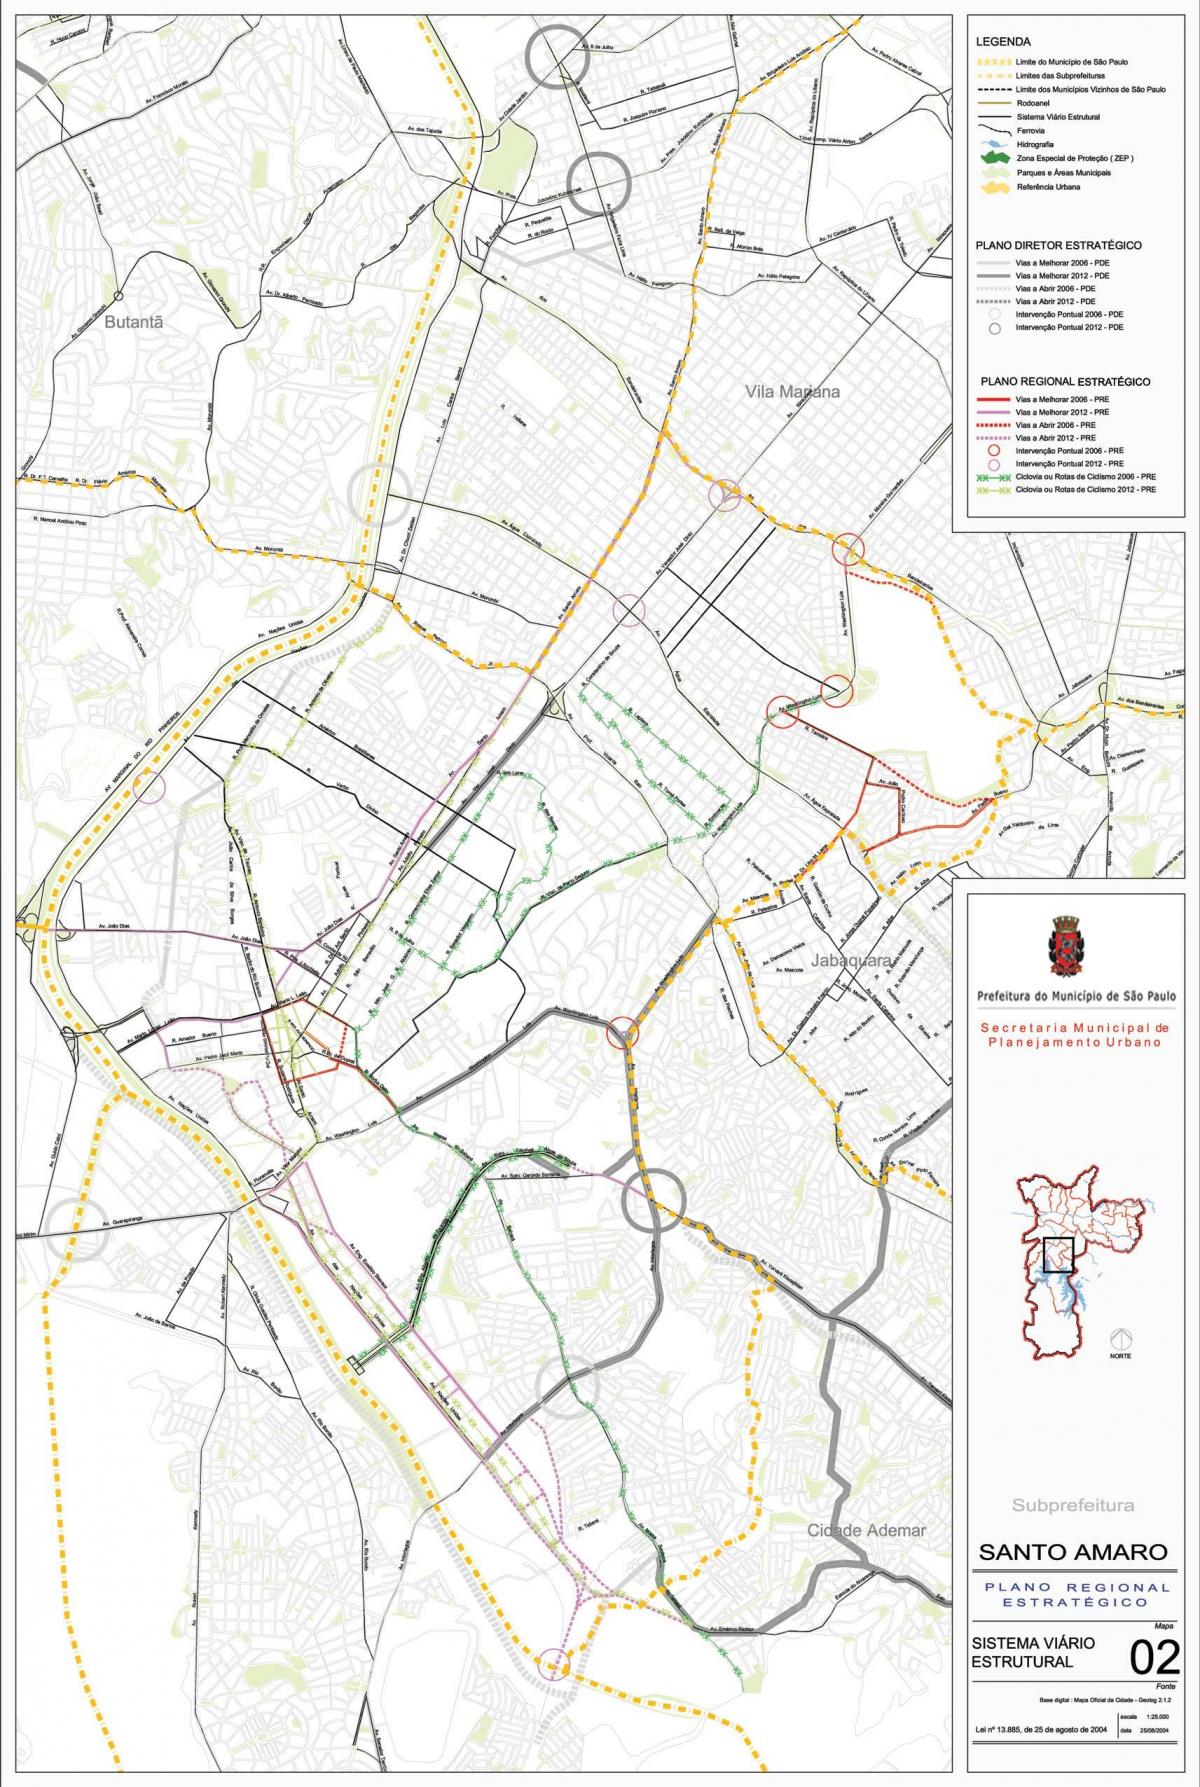 Kort over Santo Amaro São Paulo - Veje